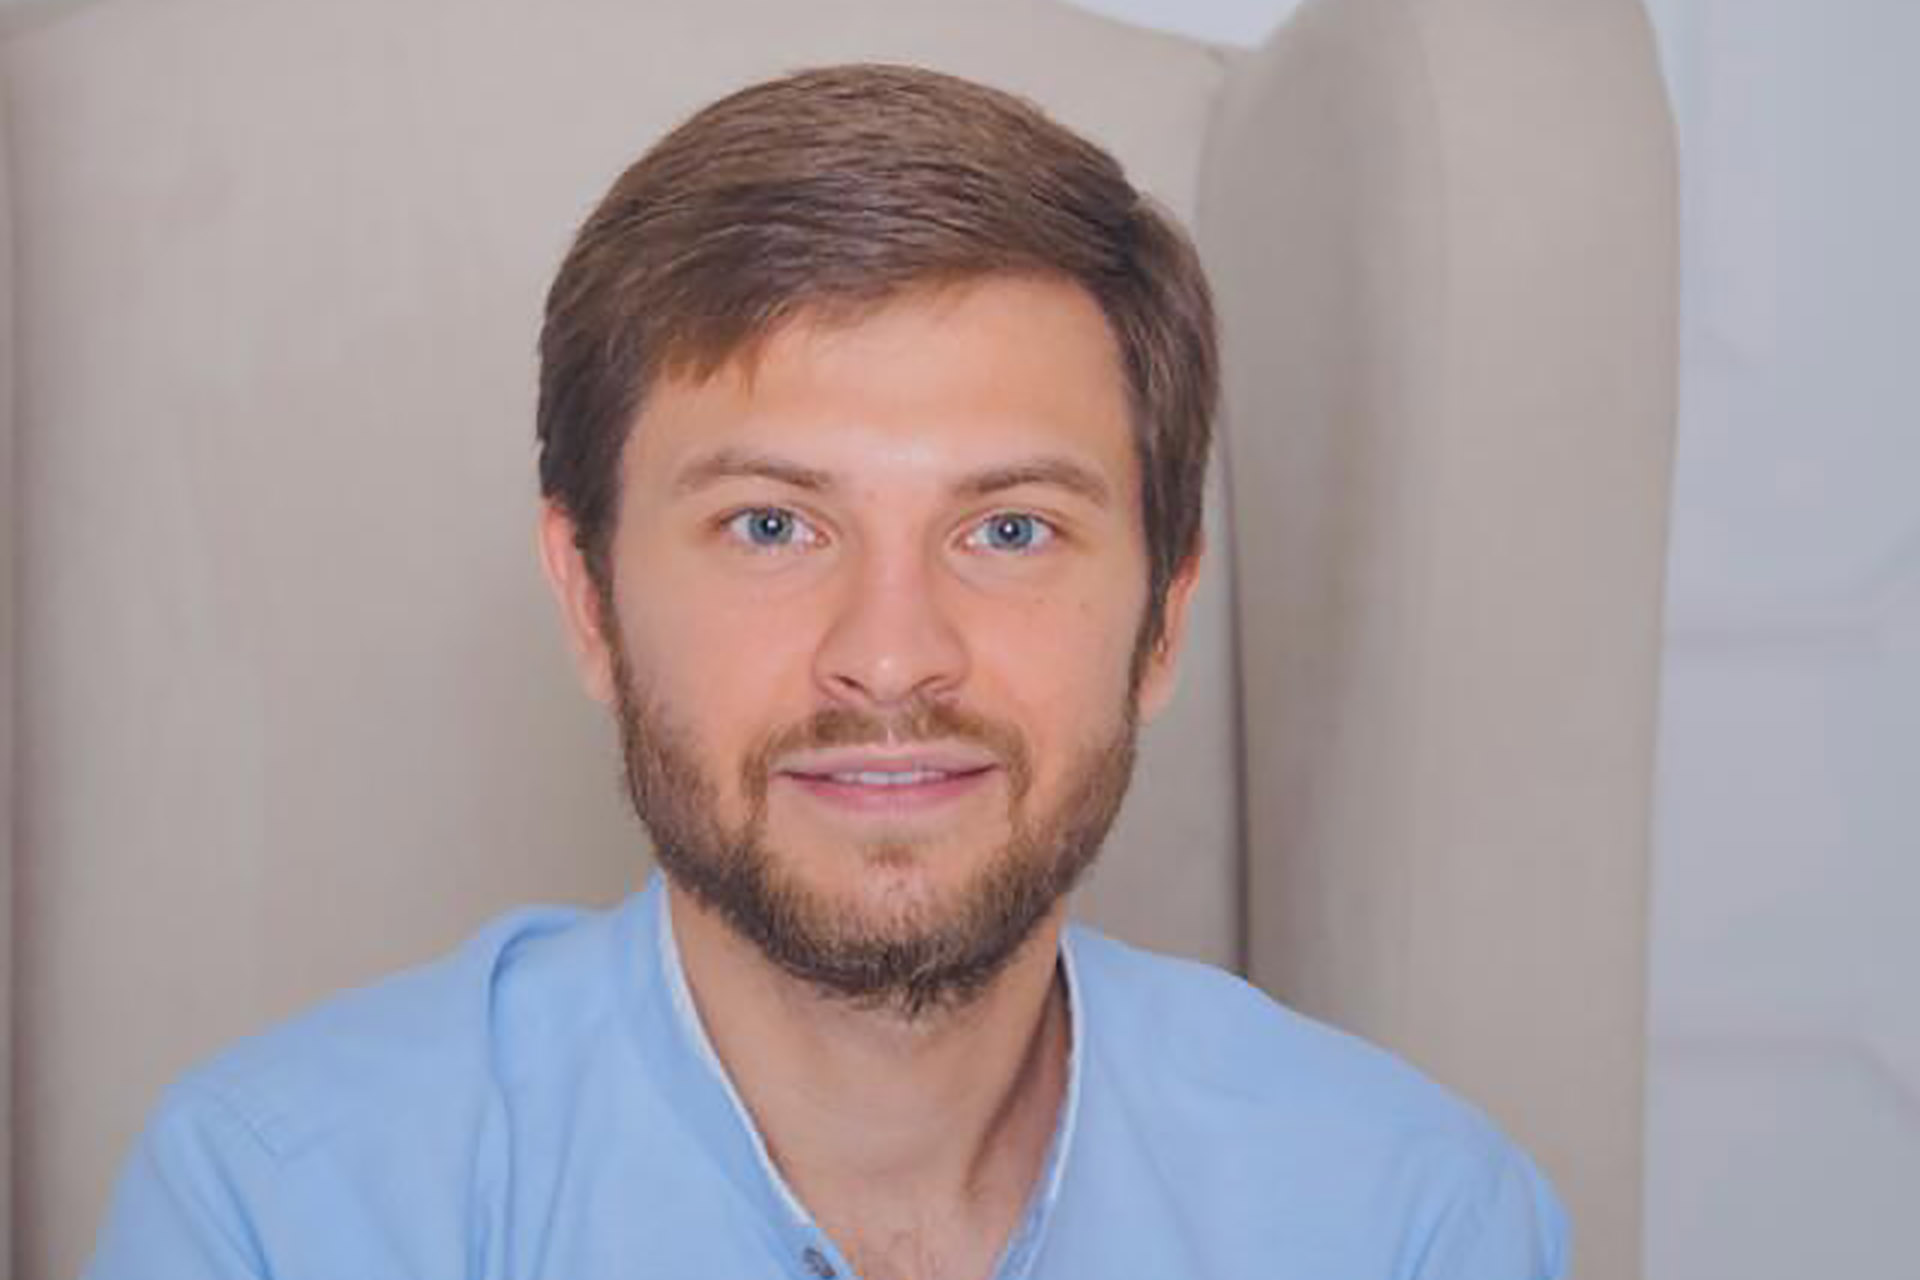 Александр Плужников — эксперт в области банкинга, кредитования, ИТ